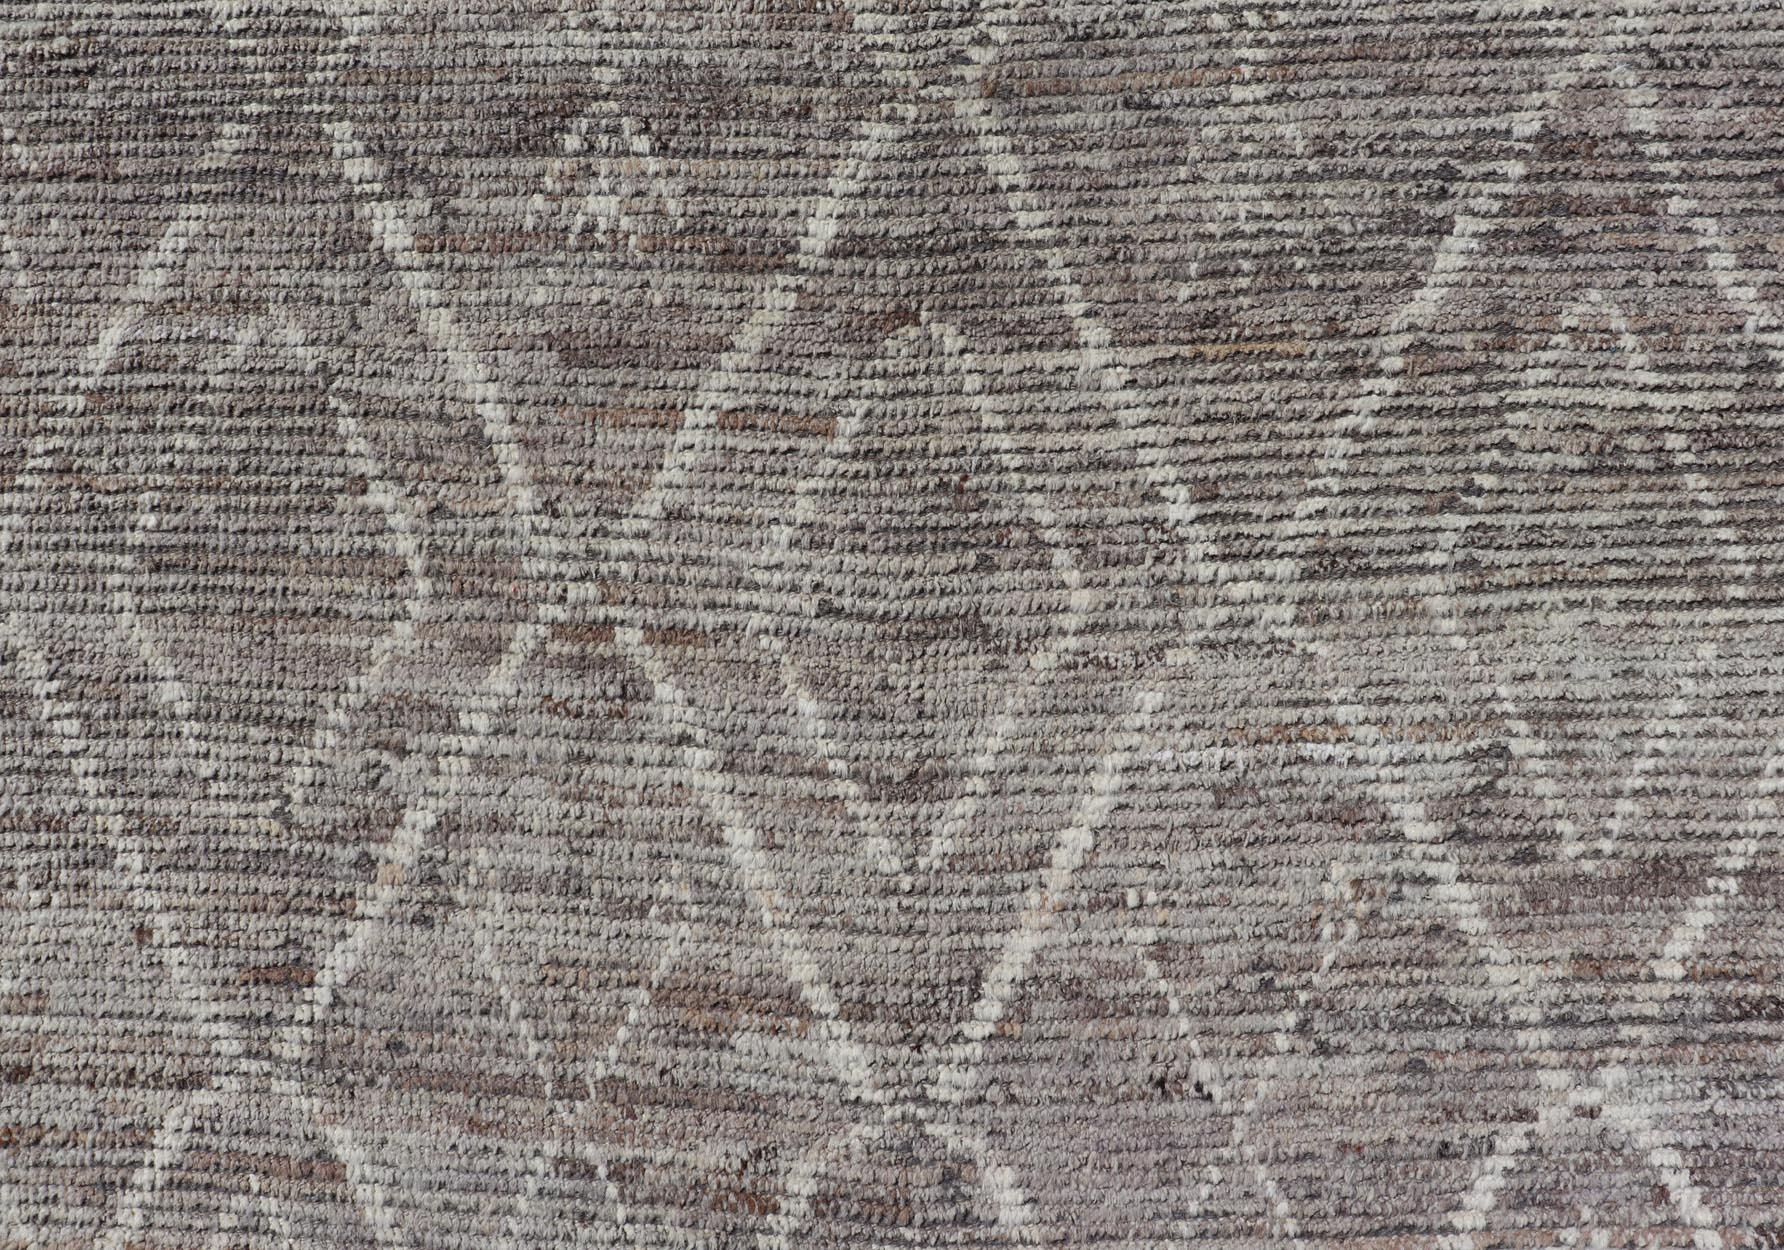 Ce tapis moderne et décontracté a été noué à la main. Le tapis présente un motif géométrique marocain en diamants, agrémenté de divers motifs gris et crème, ce qui fait de ce tapis un superbe choix pour une variété d'intérieurs classiques, modernes,